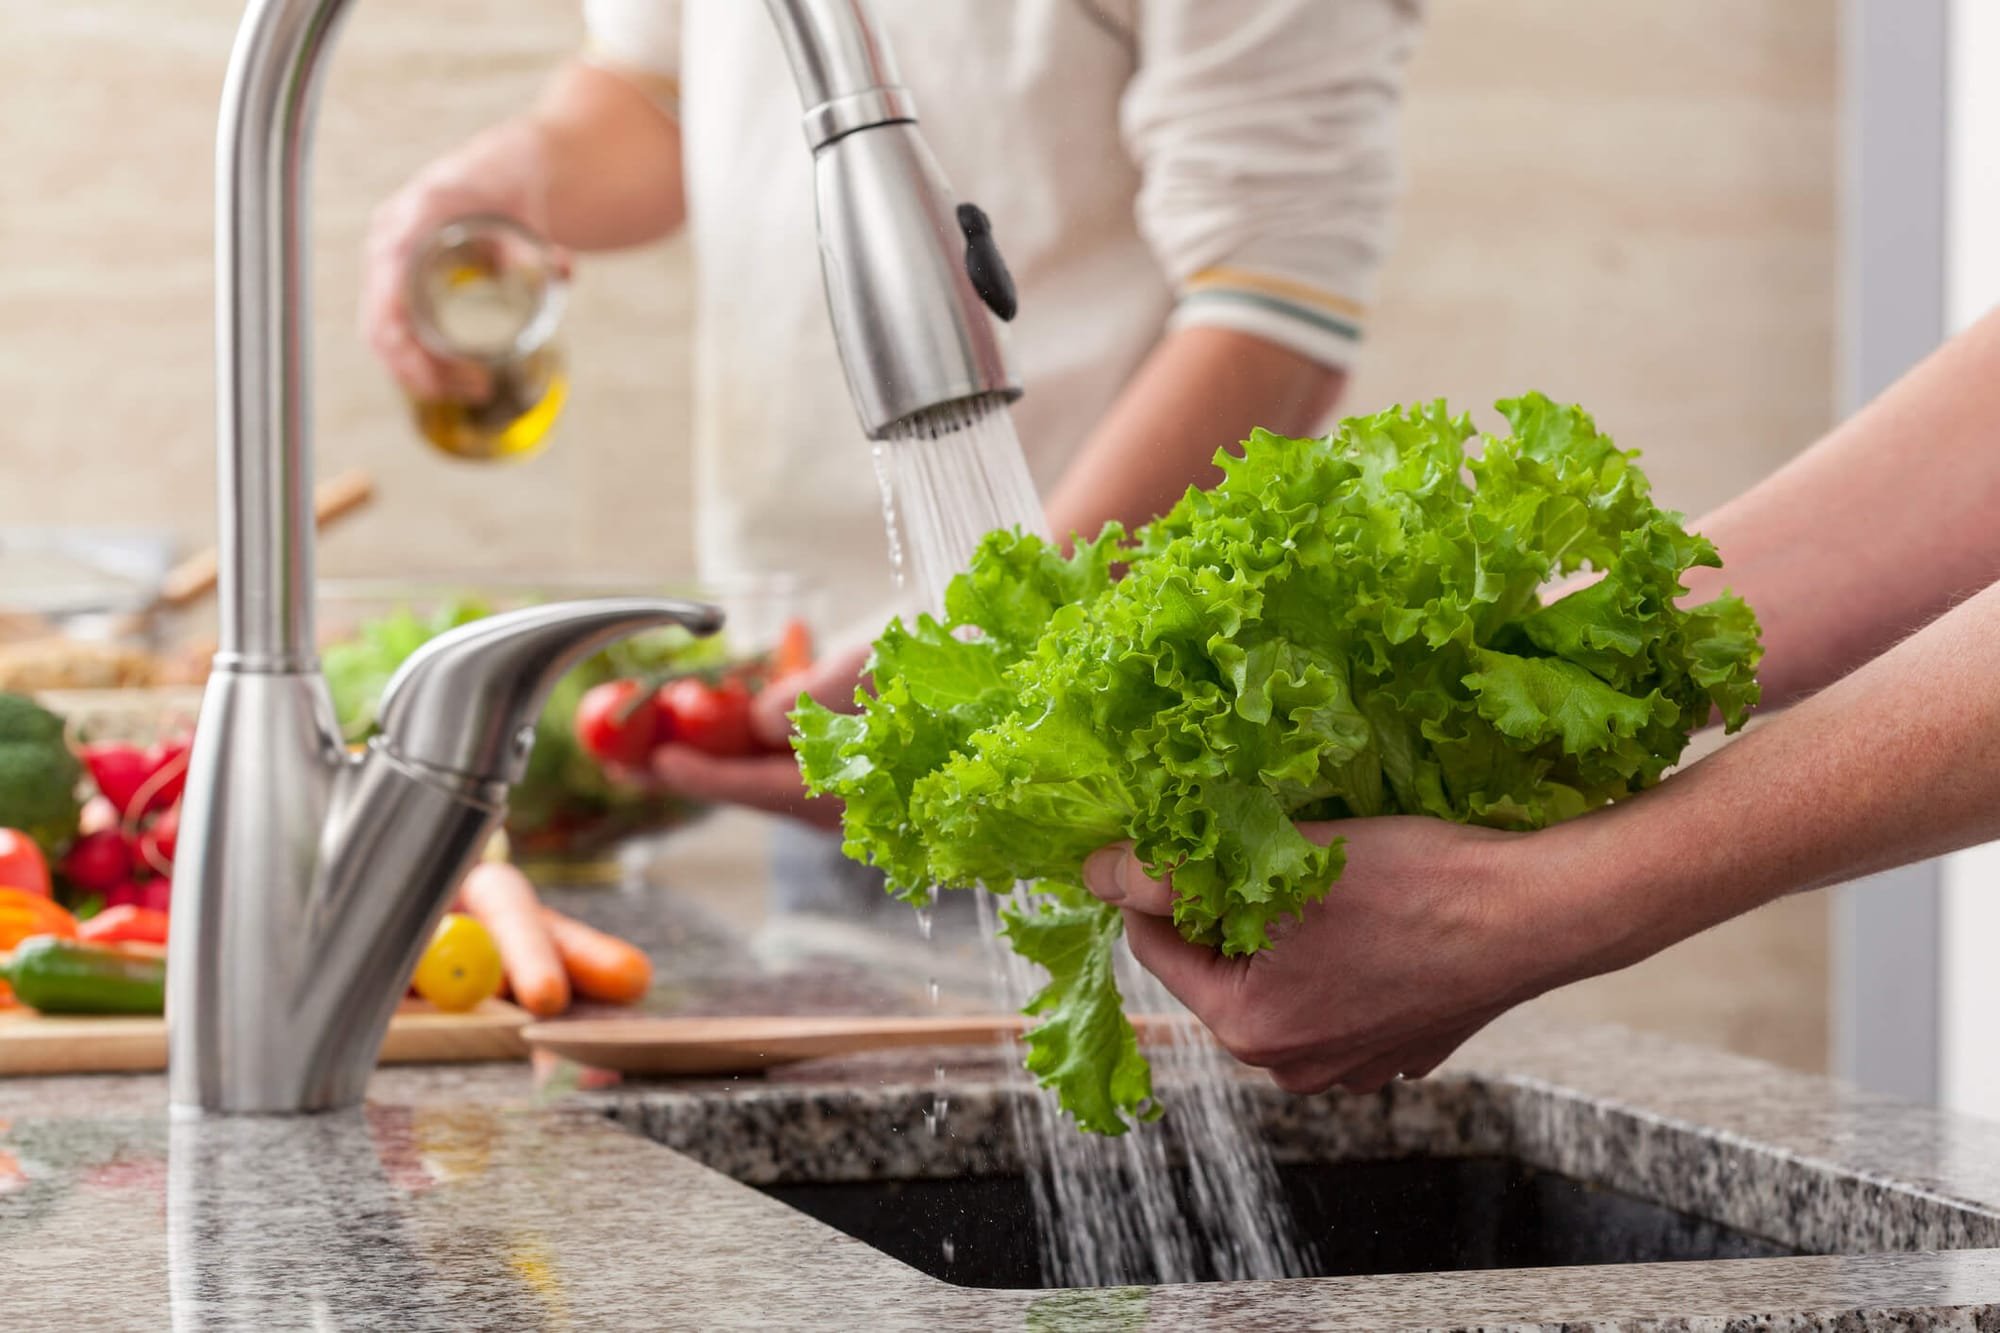 نصائح لمنع التسمم الغذائى.. أبرزها غسل اليدين والخضروات جيدا